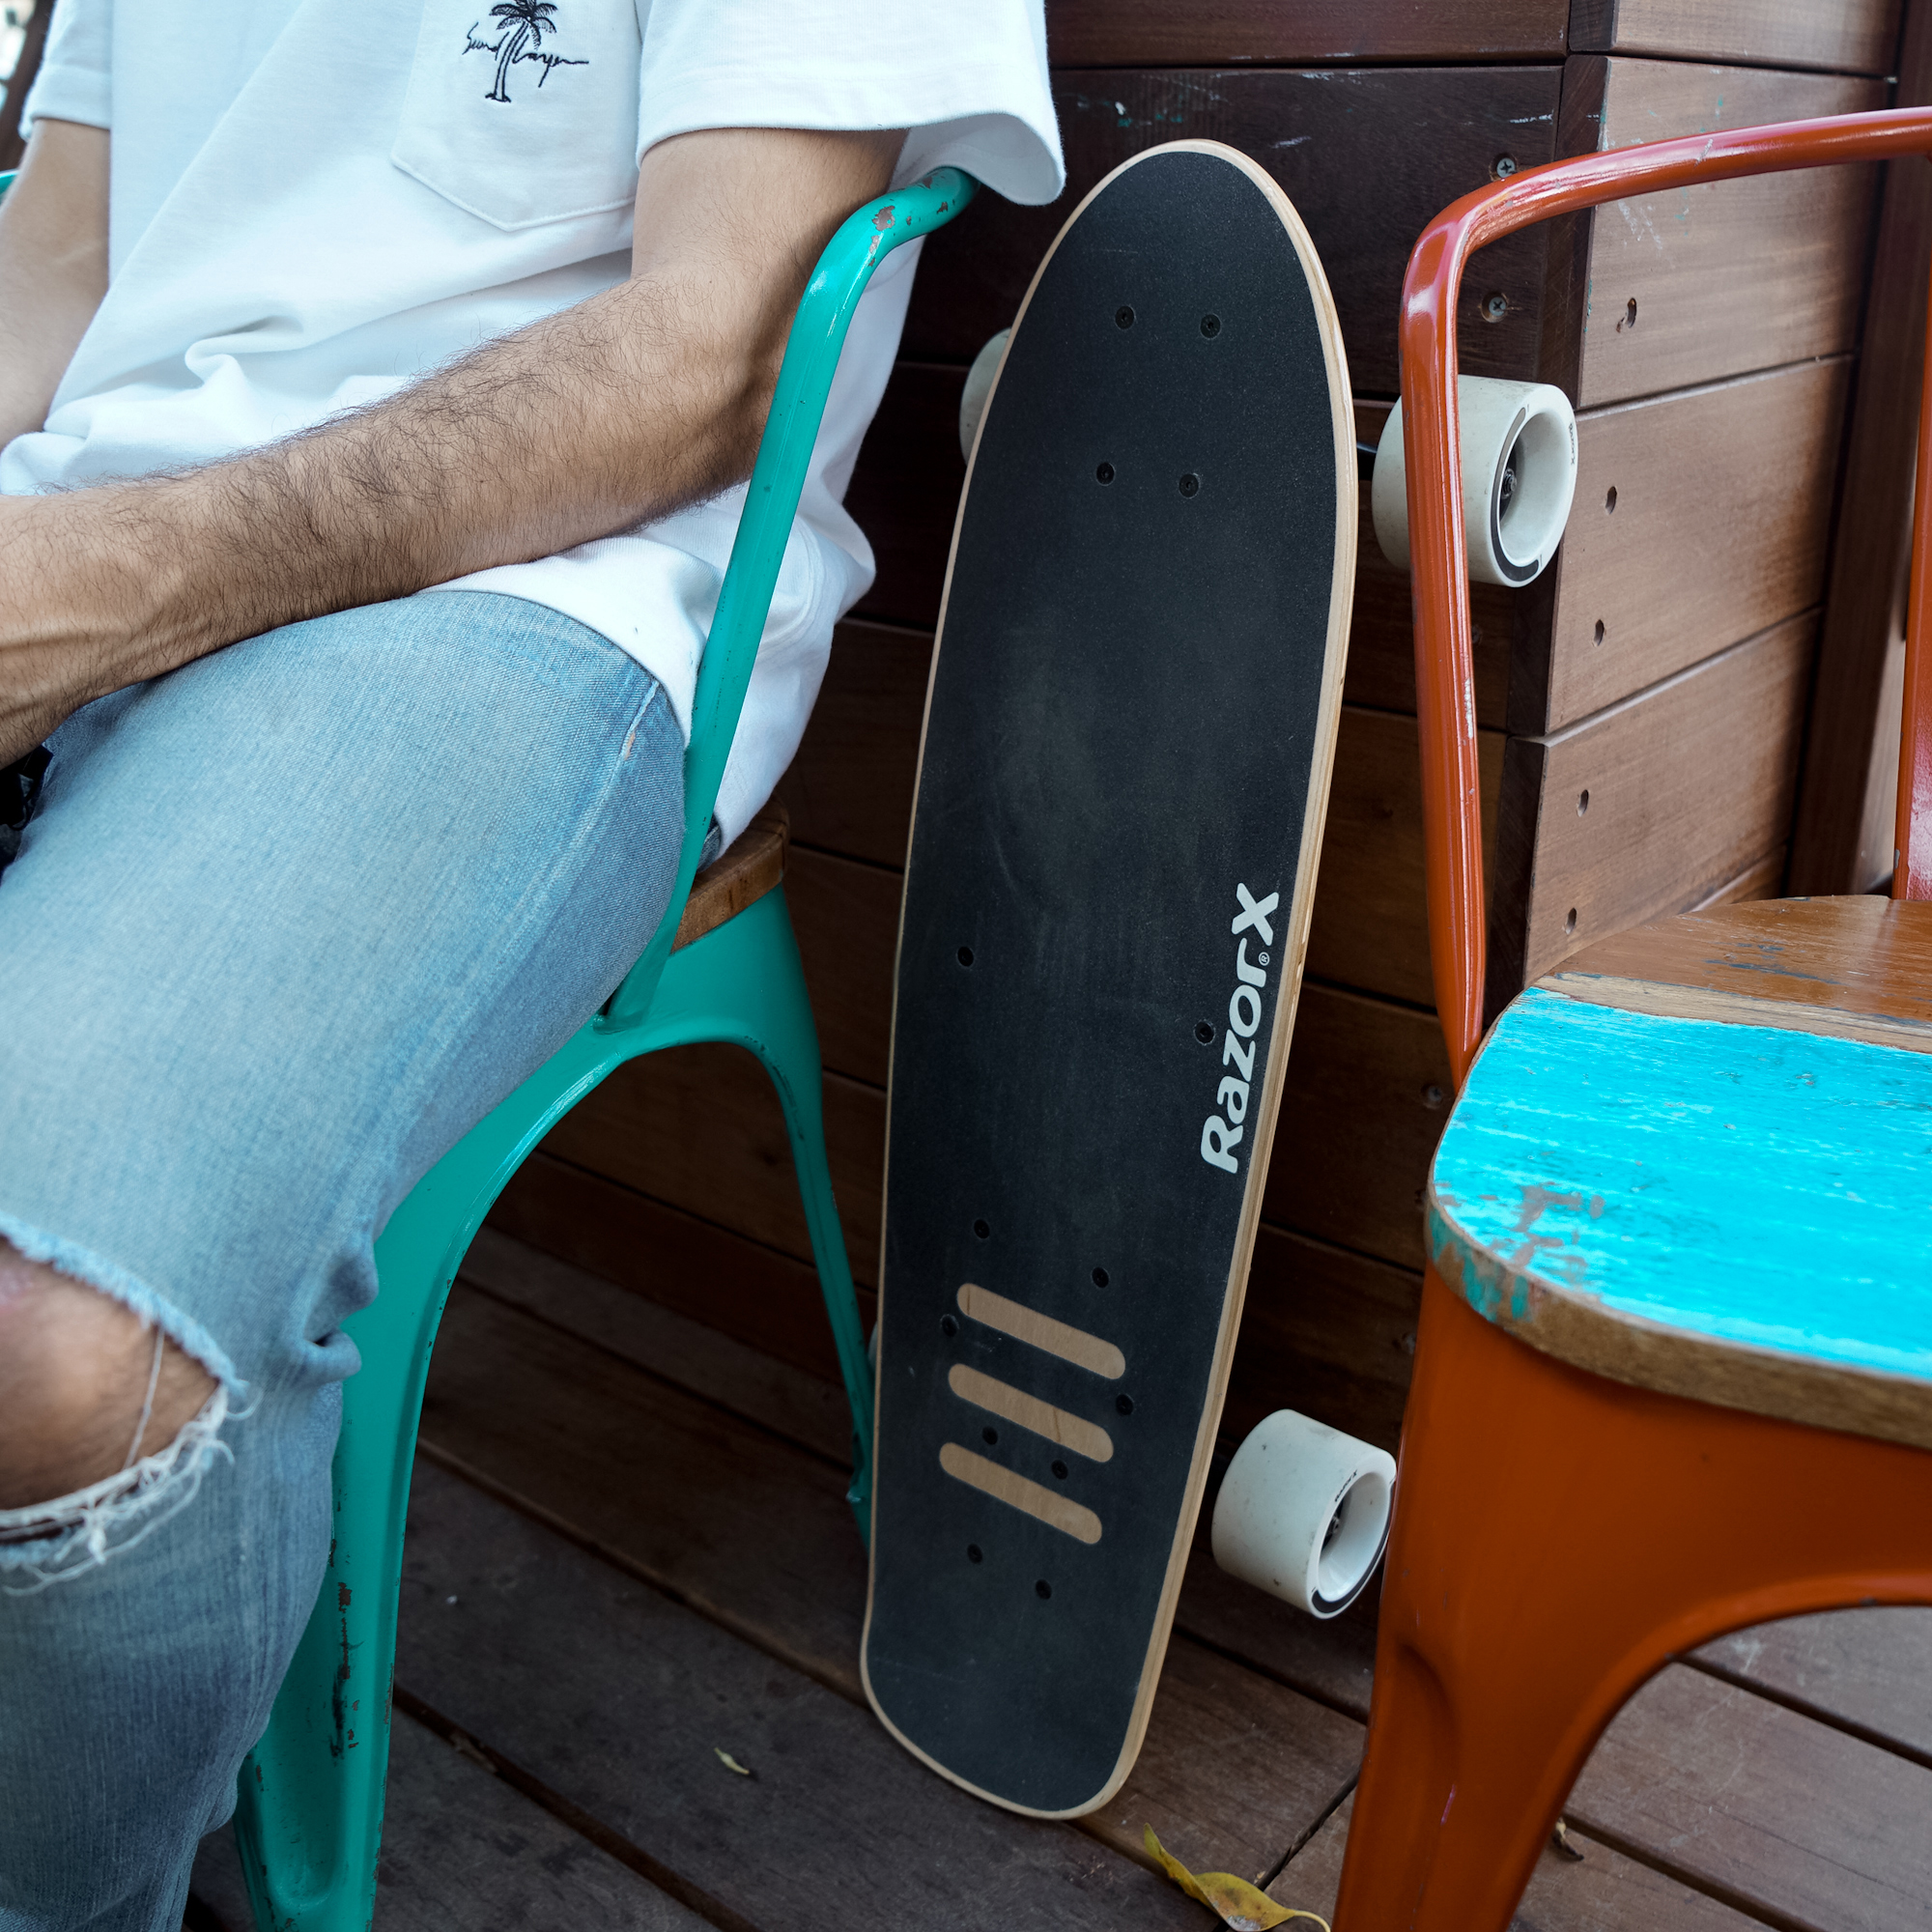 Næste Gæstfrihed møde RazorX Cruiser Electric Skateboard - Razor